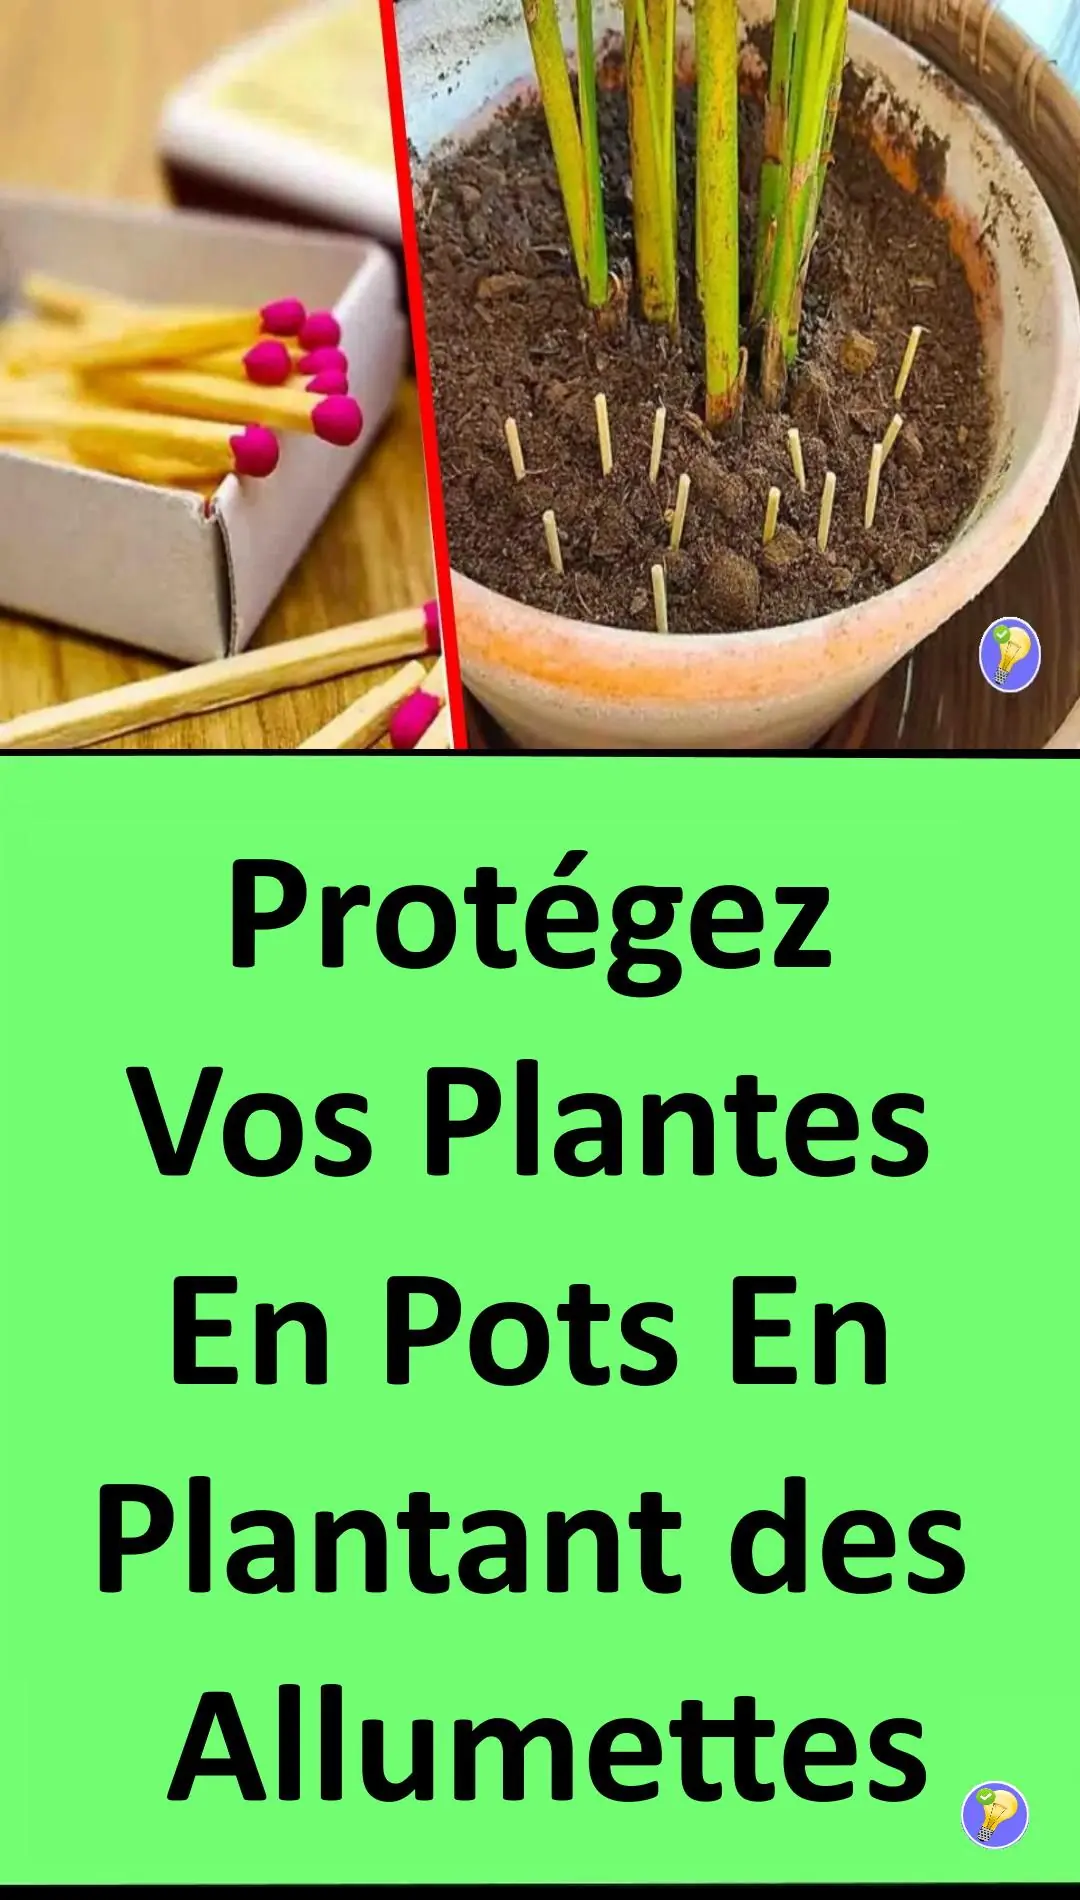 Plantes vertes : pourquoi mettre des allumettes dans les pots ?